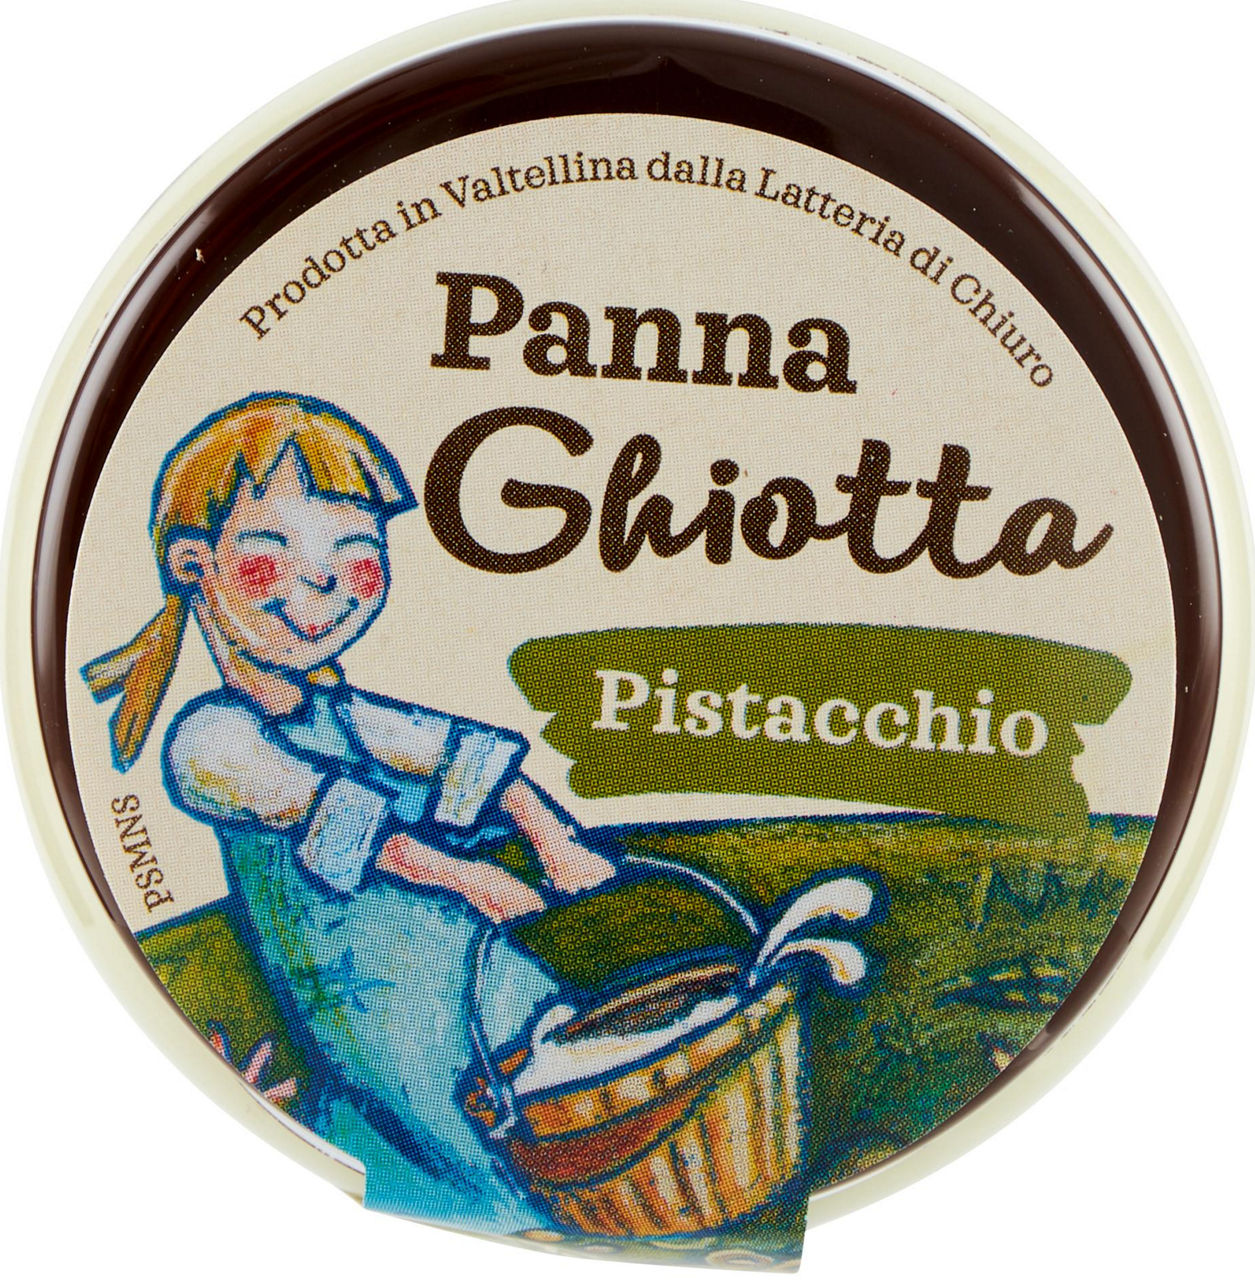 PANNA GHIOTTA PISTACCHIO 120 G.LATTERIA DI CHIURO - Immagine 41